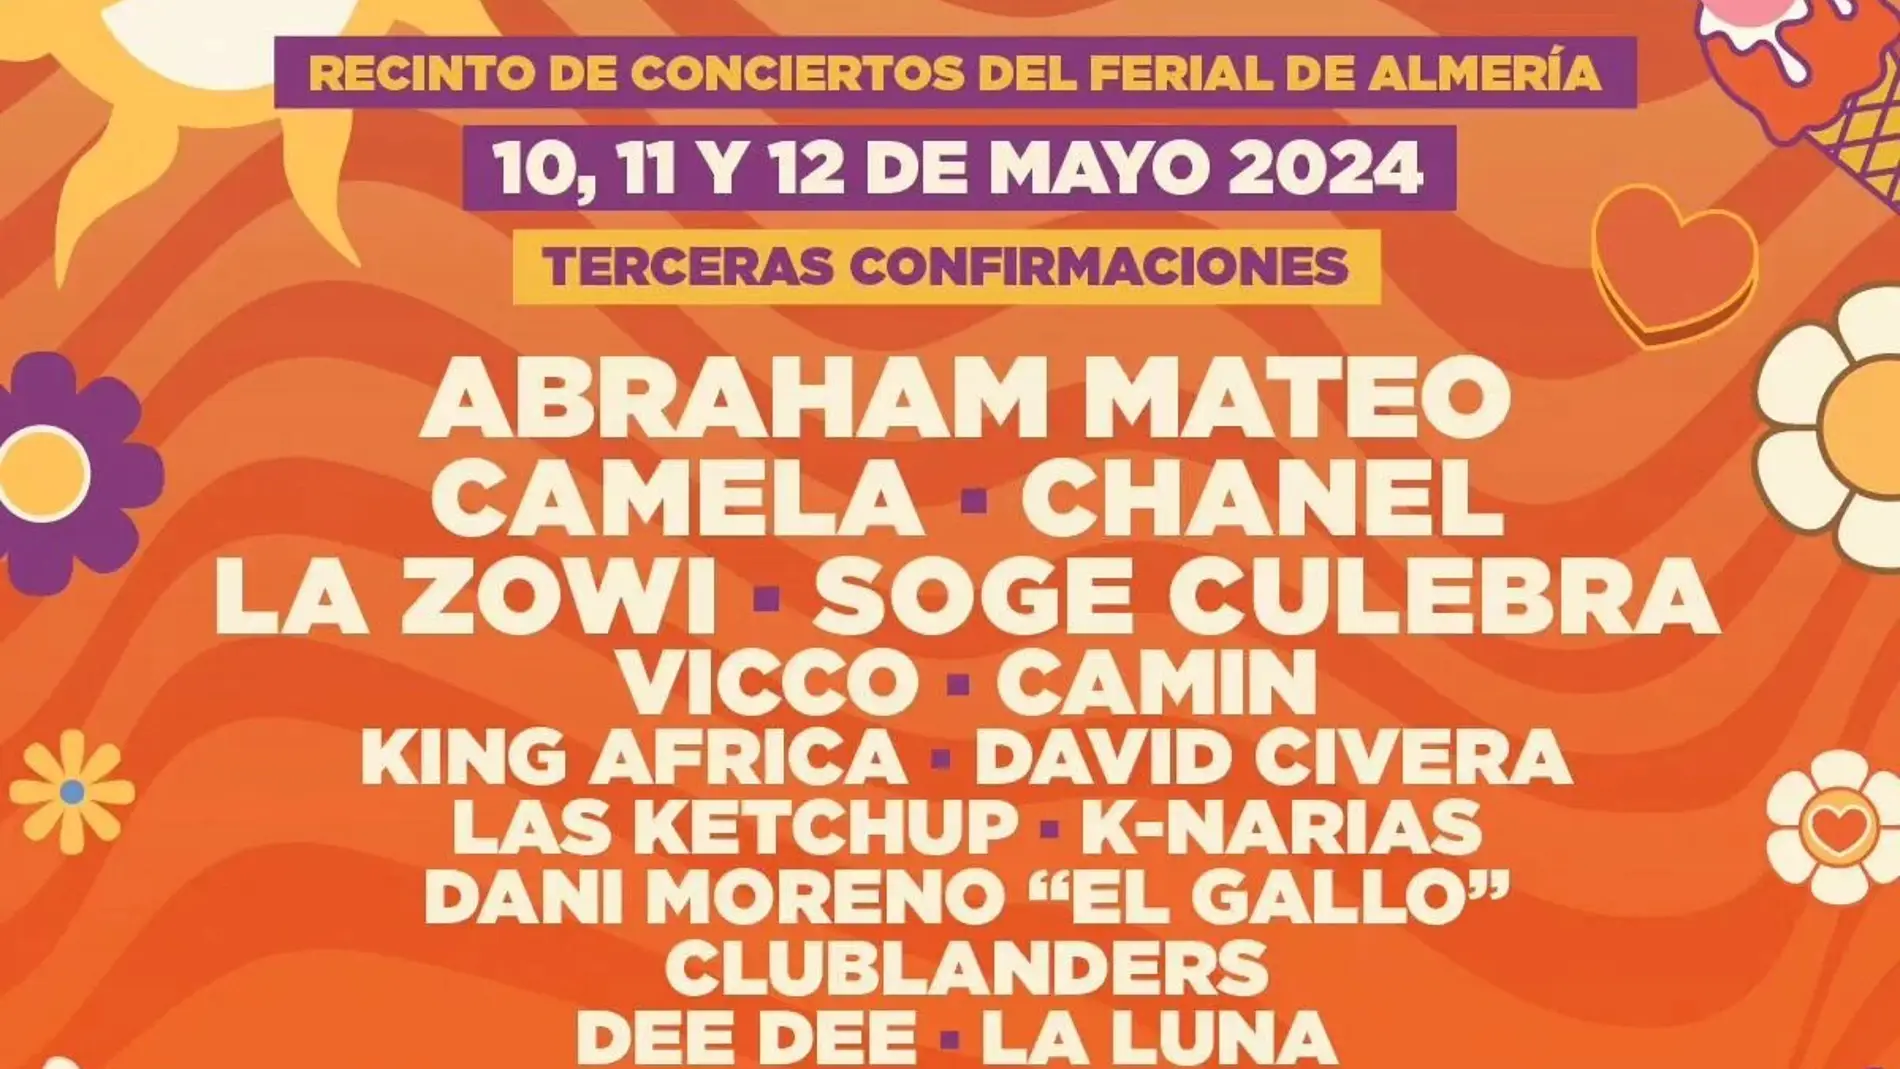 El Solazo Fest esconde cien abonos 'Golden pass' que permitirá acceso al Recinto de Conciertos del Ferial de Almería